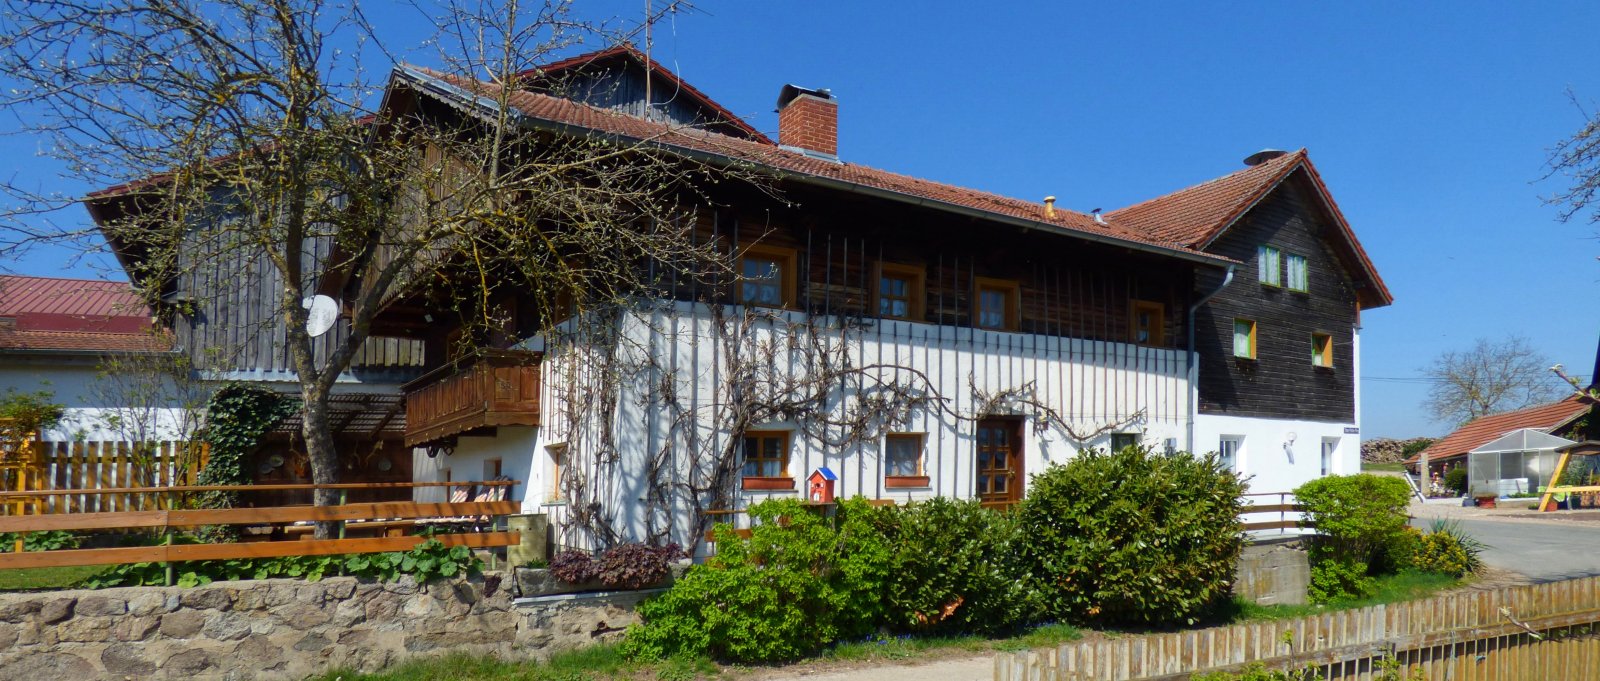 Gruppen Bauernhof in Bayern – Ferienhaus am Paulushof